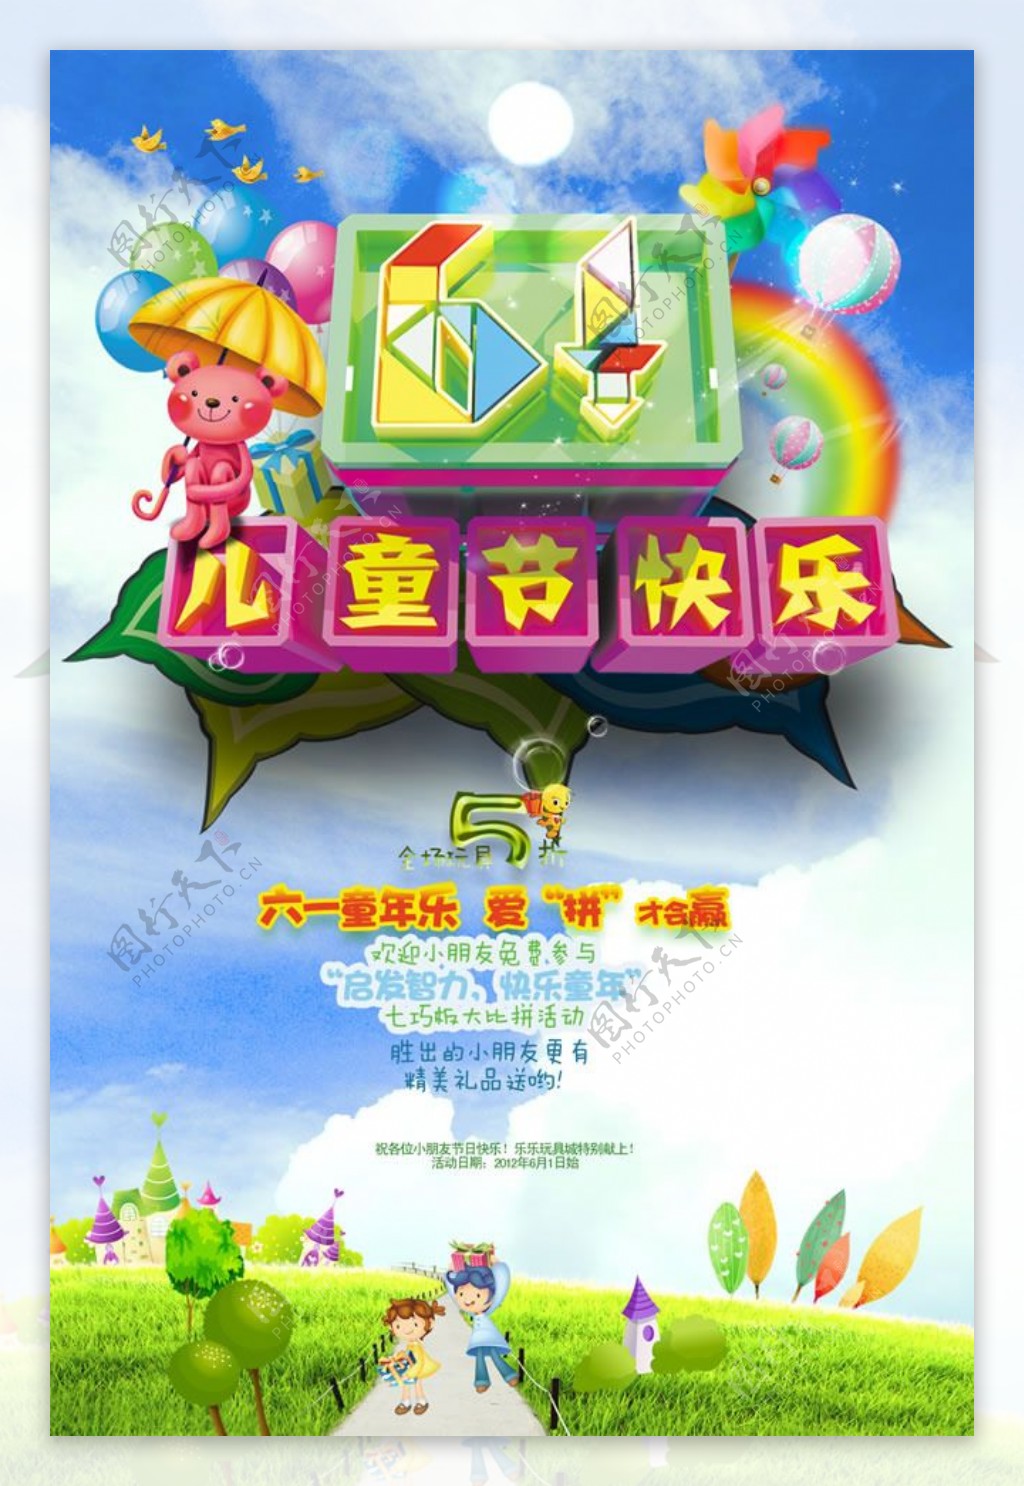 六一儿童节活动海报PSD素材